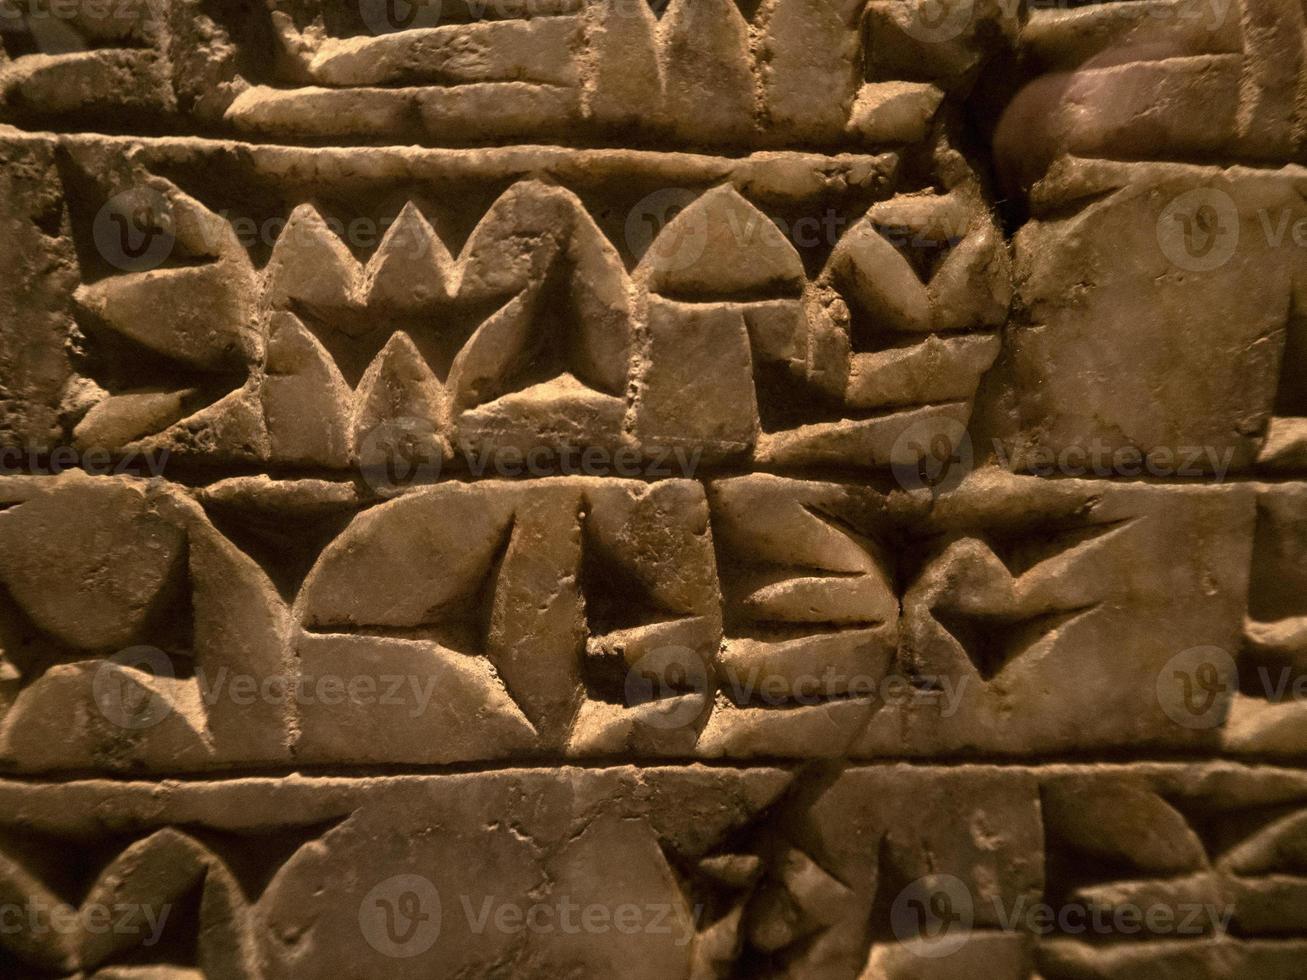 kilskrift skrivning assyrien babylonia sumer detalj foto